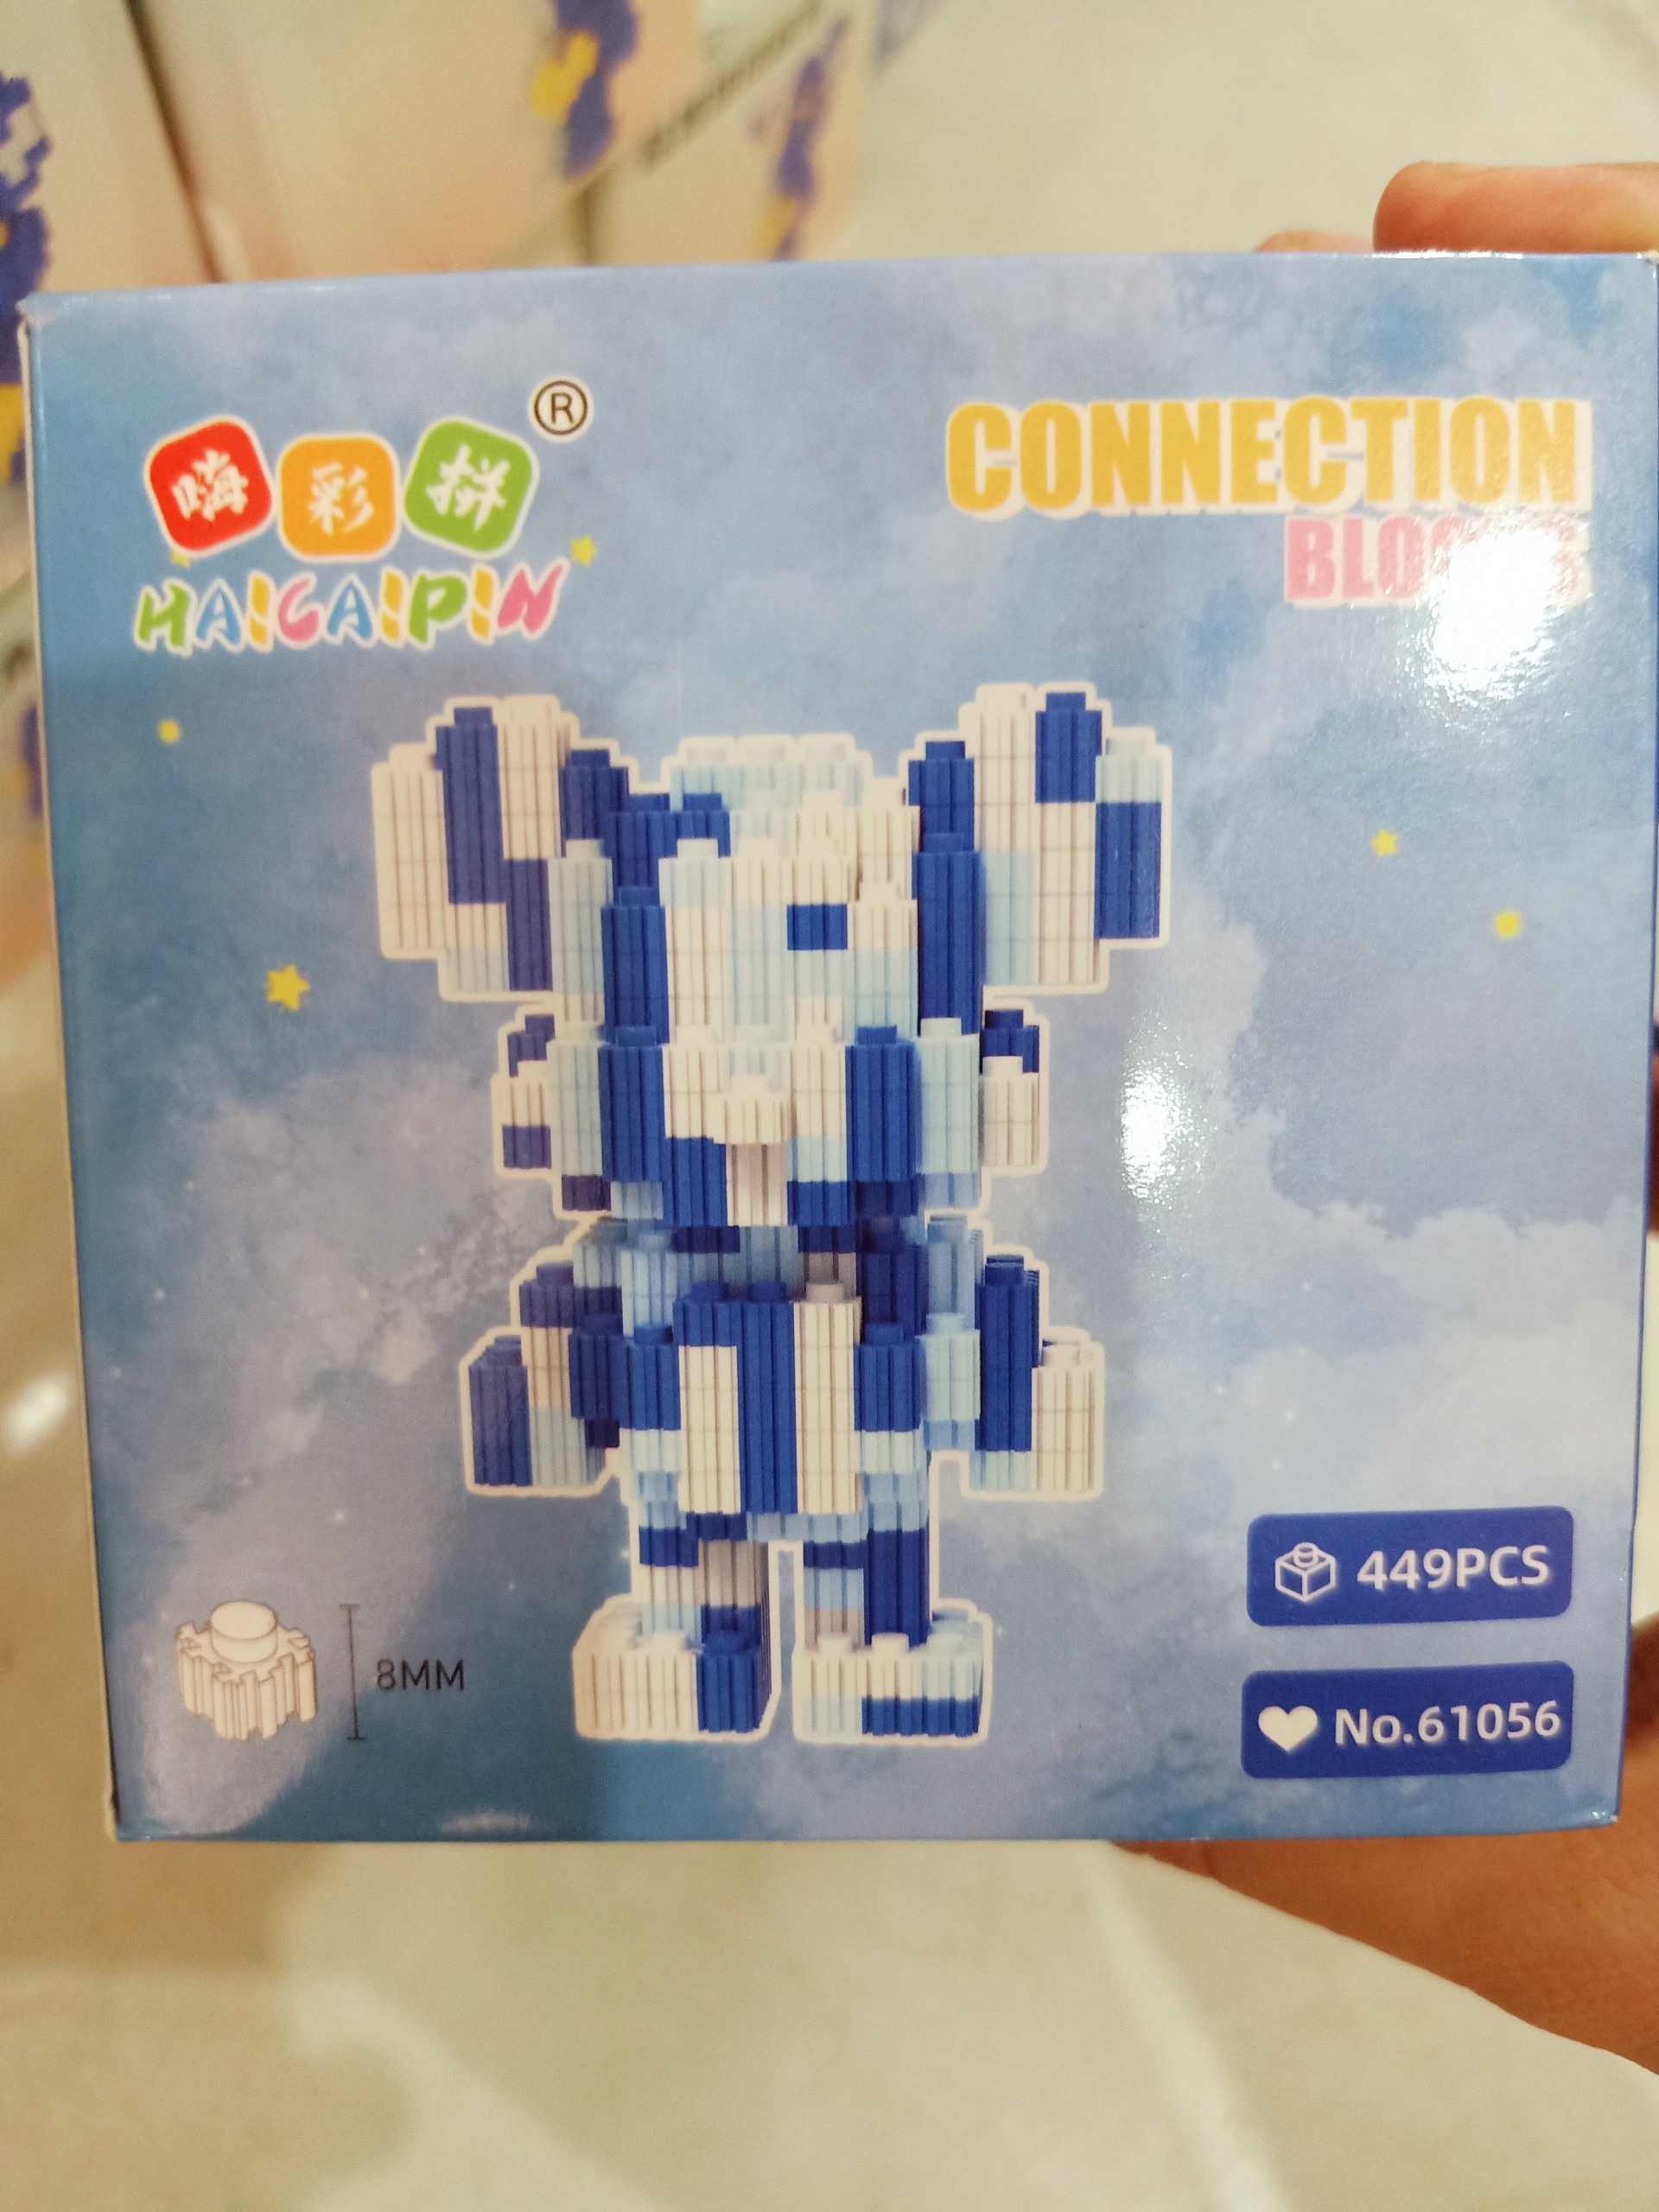 [12-14/12 VC 25k] Combo 5 bộ Mô hình lego 3D lắp ráp động vật nhân vật hoạt hình dễ thương cho bé có sách hướng dẫn chi tiết lắp ghép dễ dàng thích hợp làm quà tặng decor trang trí bàn học lego bearbrick gấu lego 12 con giáp